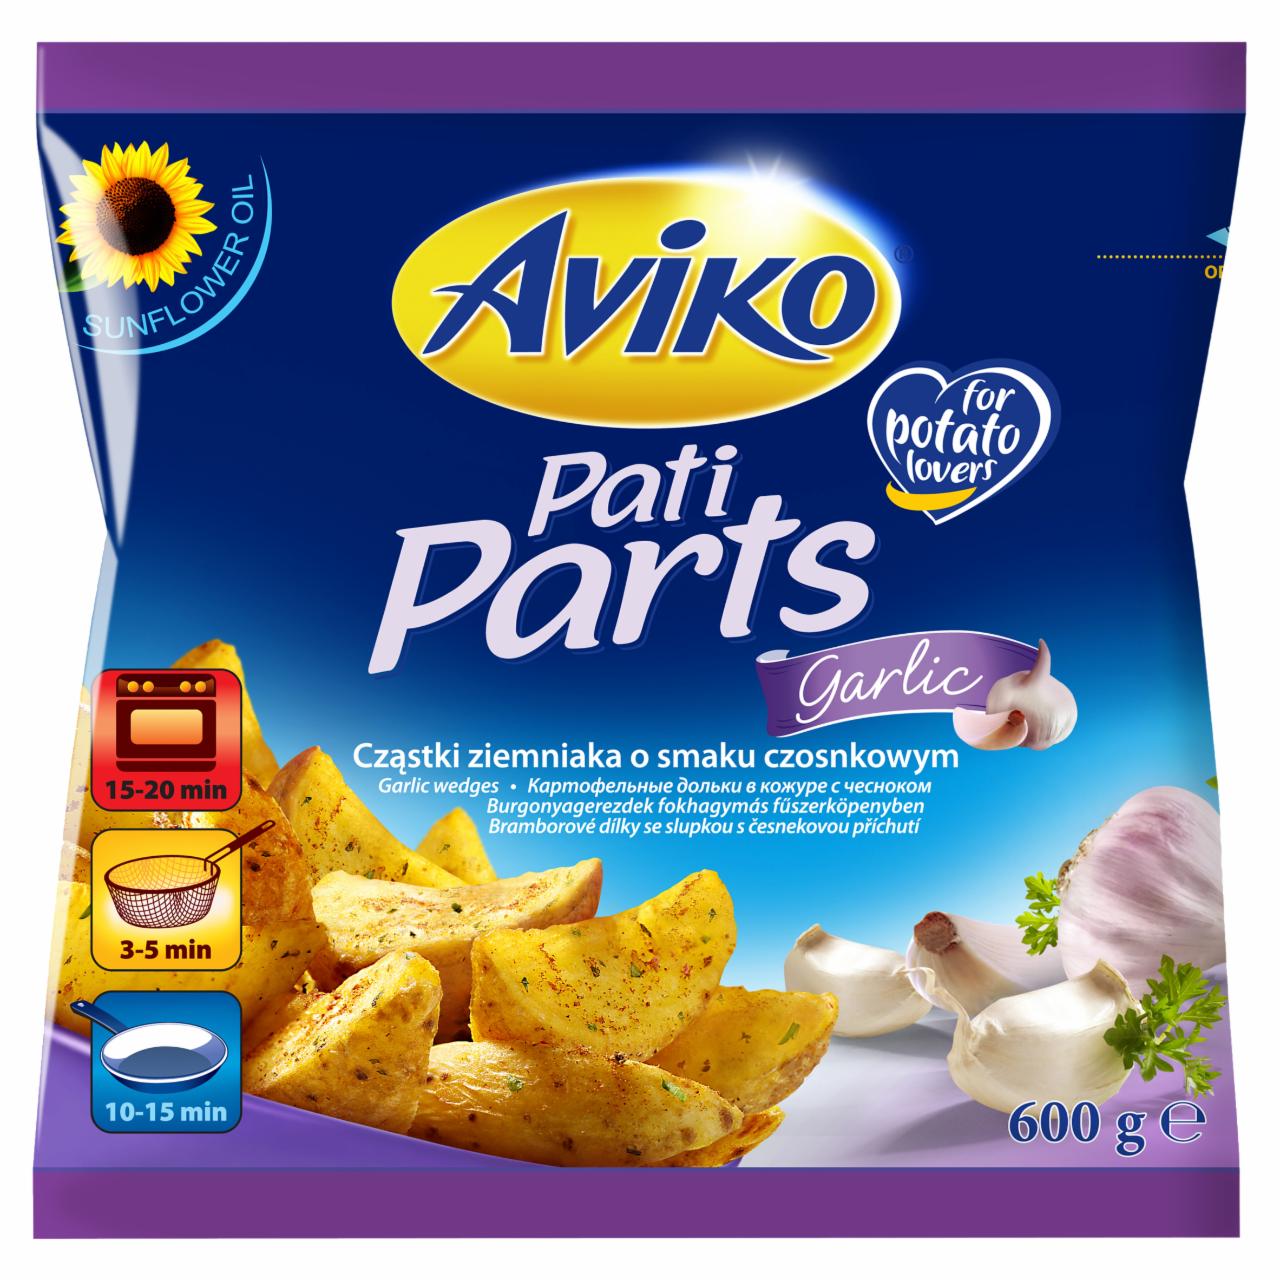 Képek - Aviko Pati Parts Garlic elősütött-gyorsfagyasztott burgonyagerezdek fokhagymás fűszerköpenyben 600 g